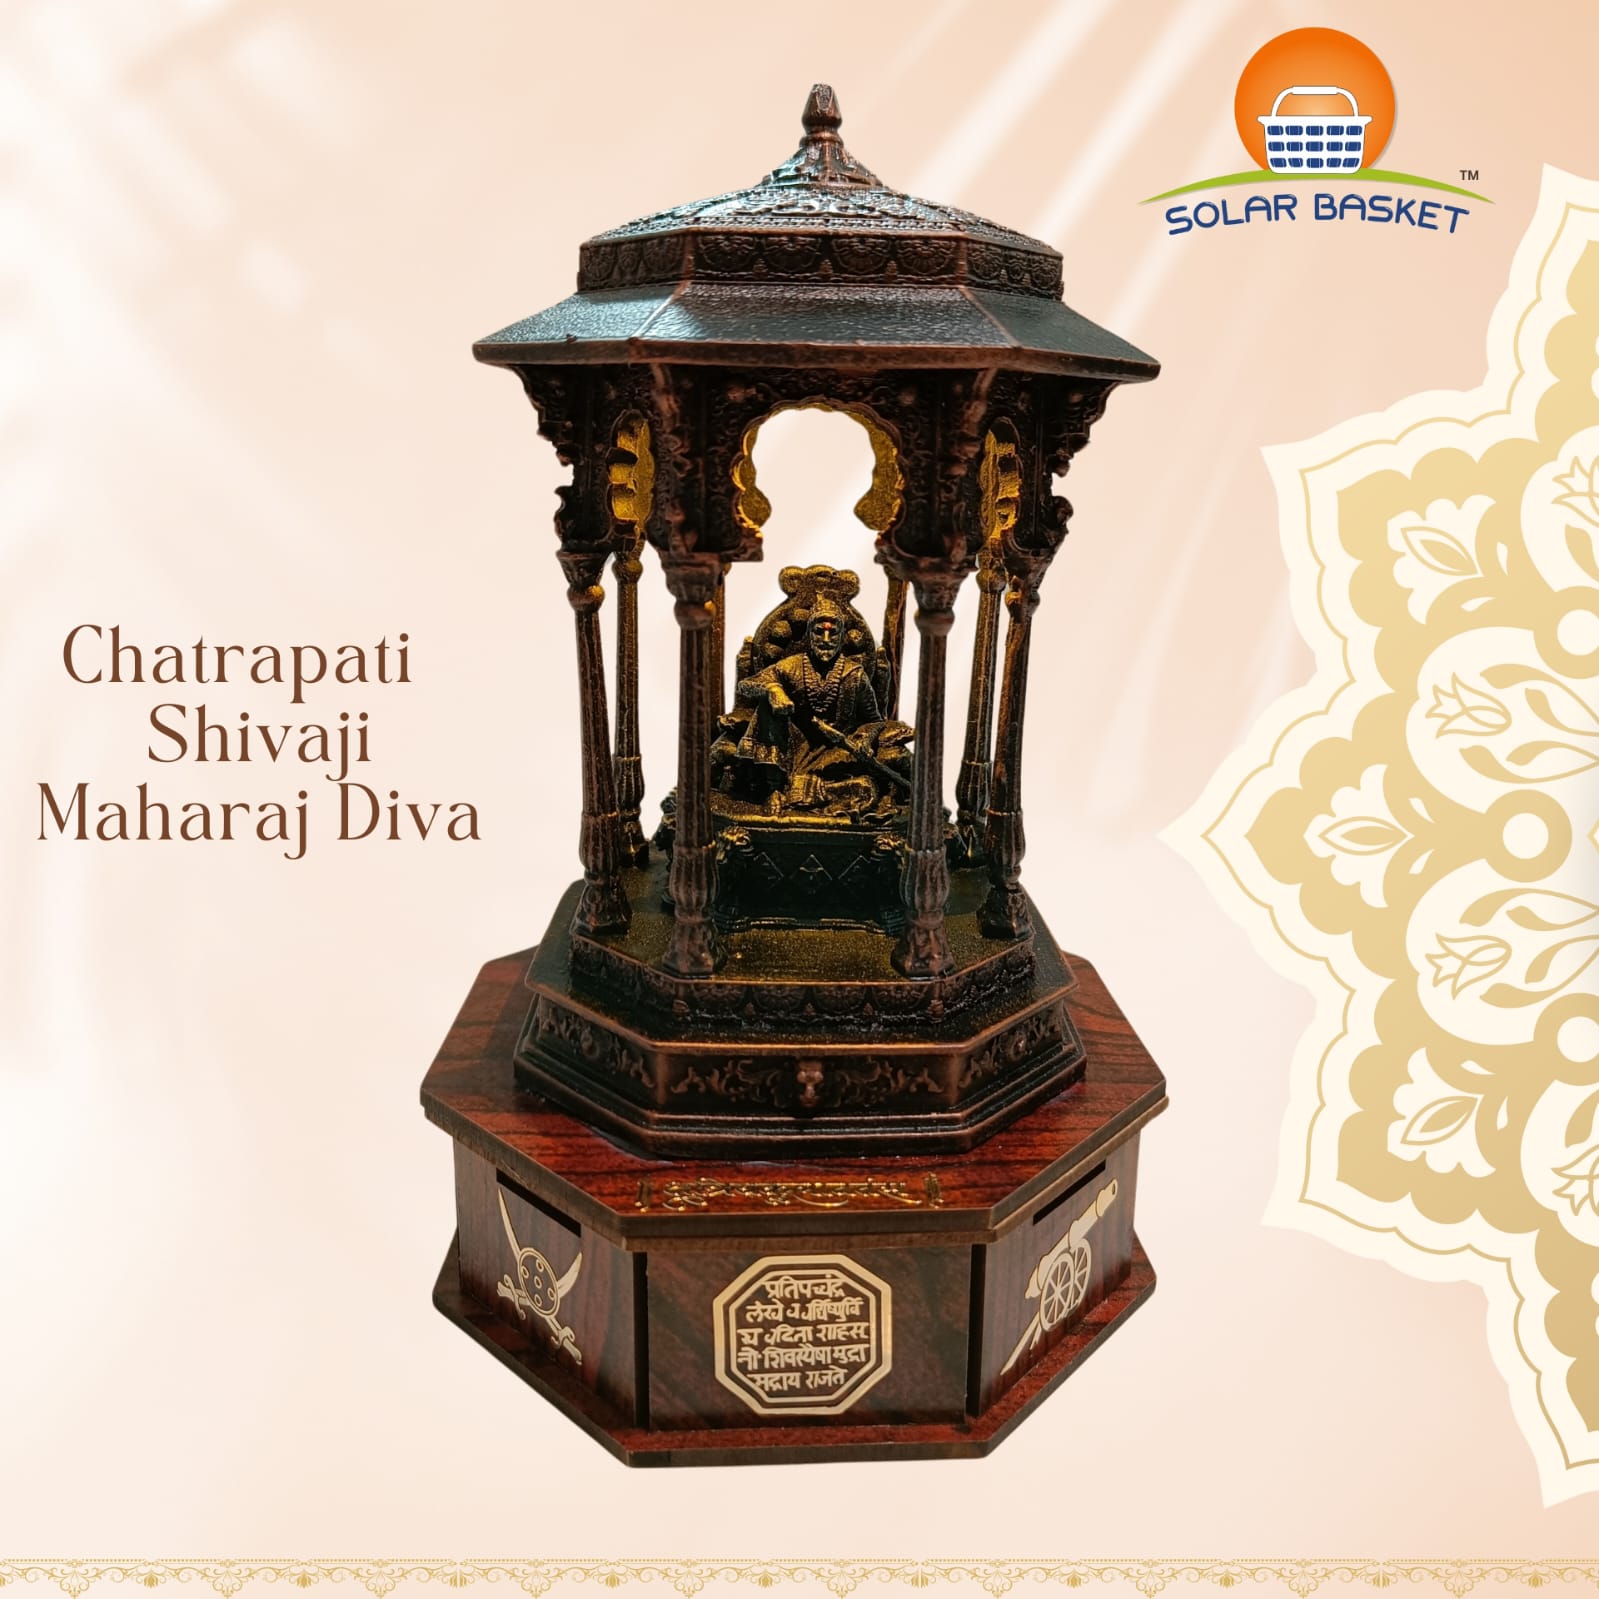 Chatrapati Shivaji Maharaj Diya